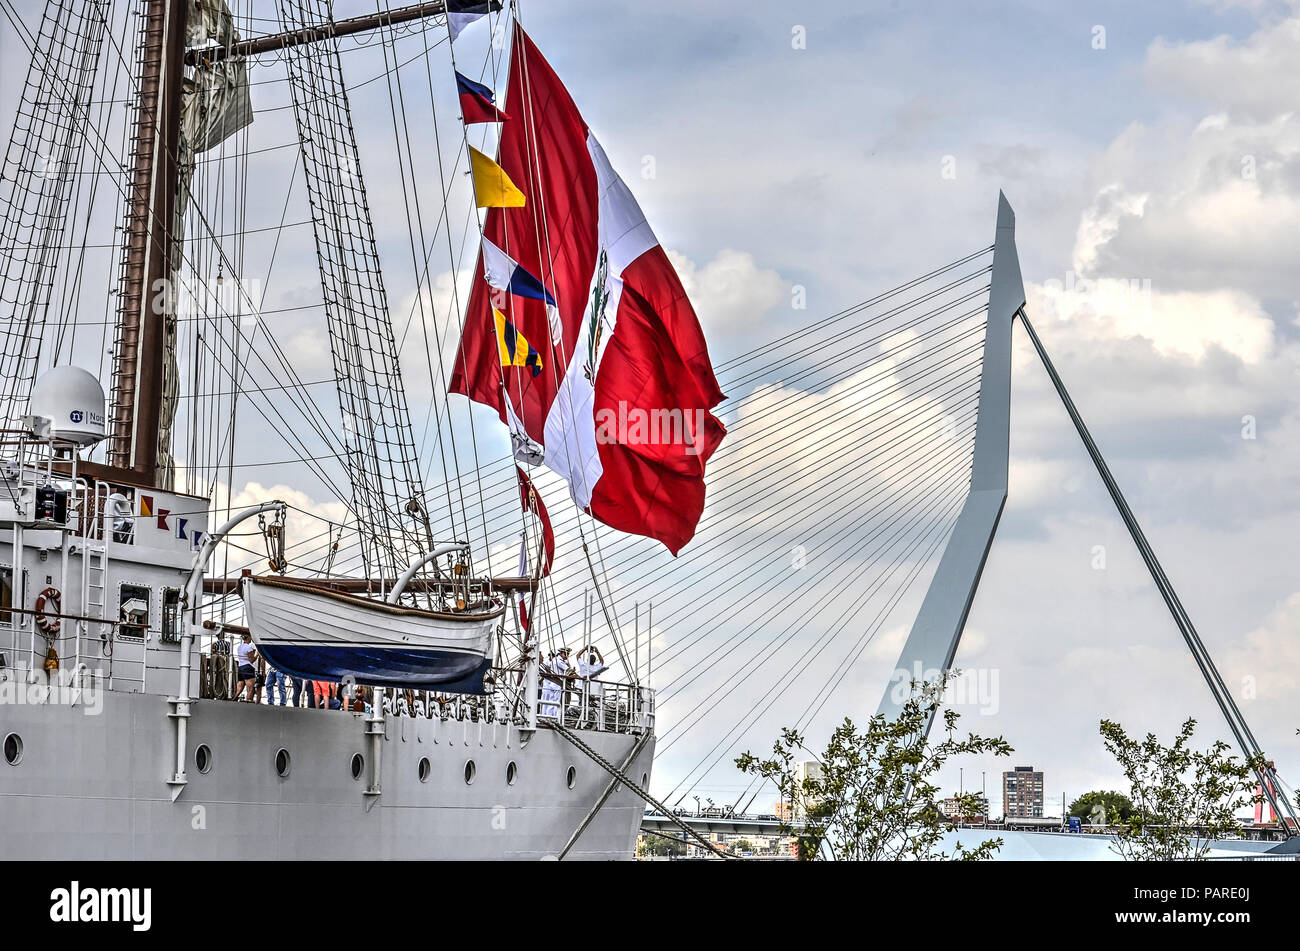 Rotterdam, Pays-Bas, le 9 août 2017 : quatre-mâts de navires de la marine péruvienne Bap Union européenne exerçant son grand drapeau, amarré au Wilhelminapier avec Erasmus Banque D'Images